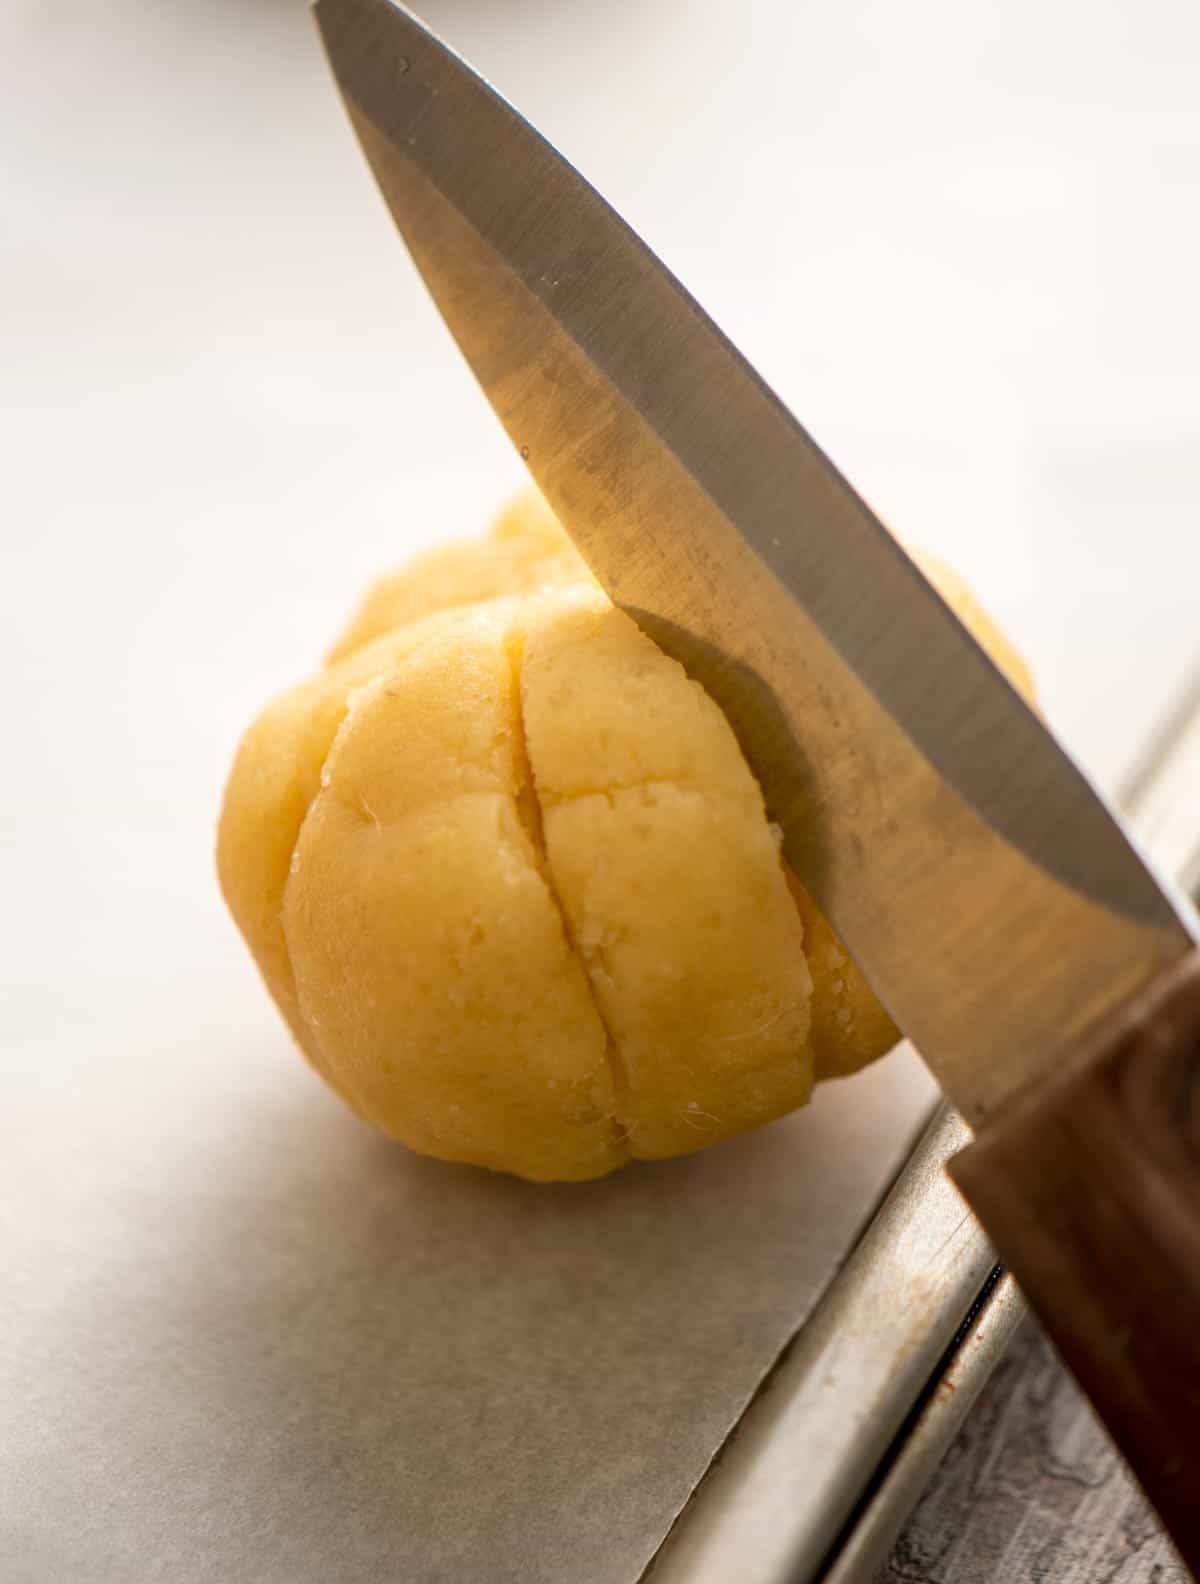 Knife cutting slits into dough balls to shape like pumpkins.